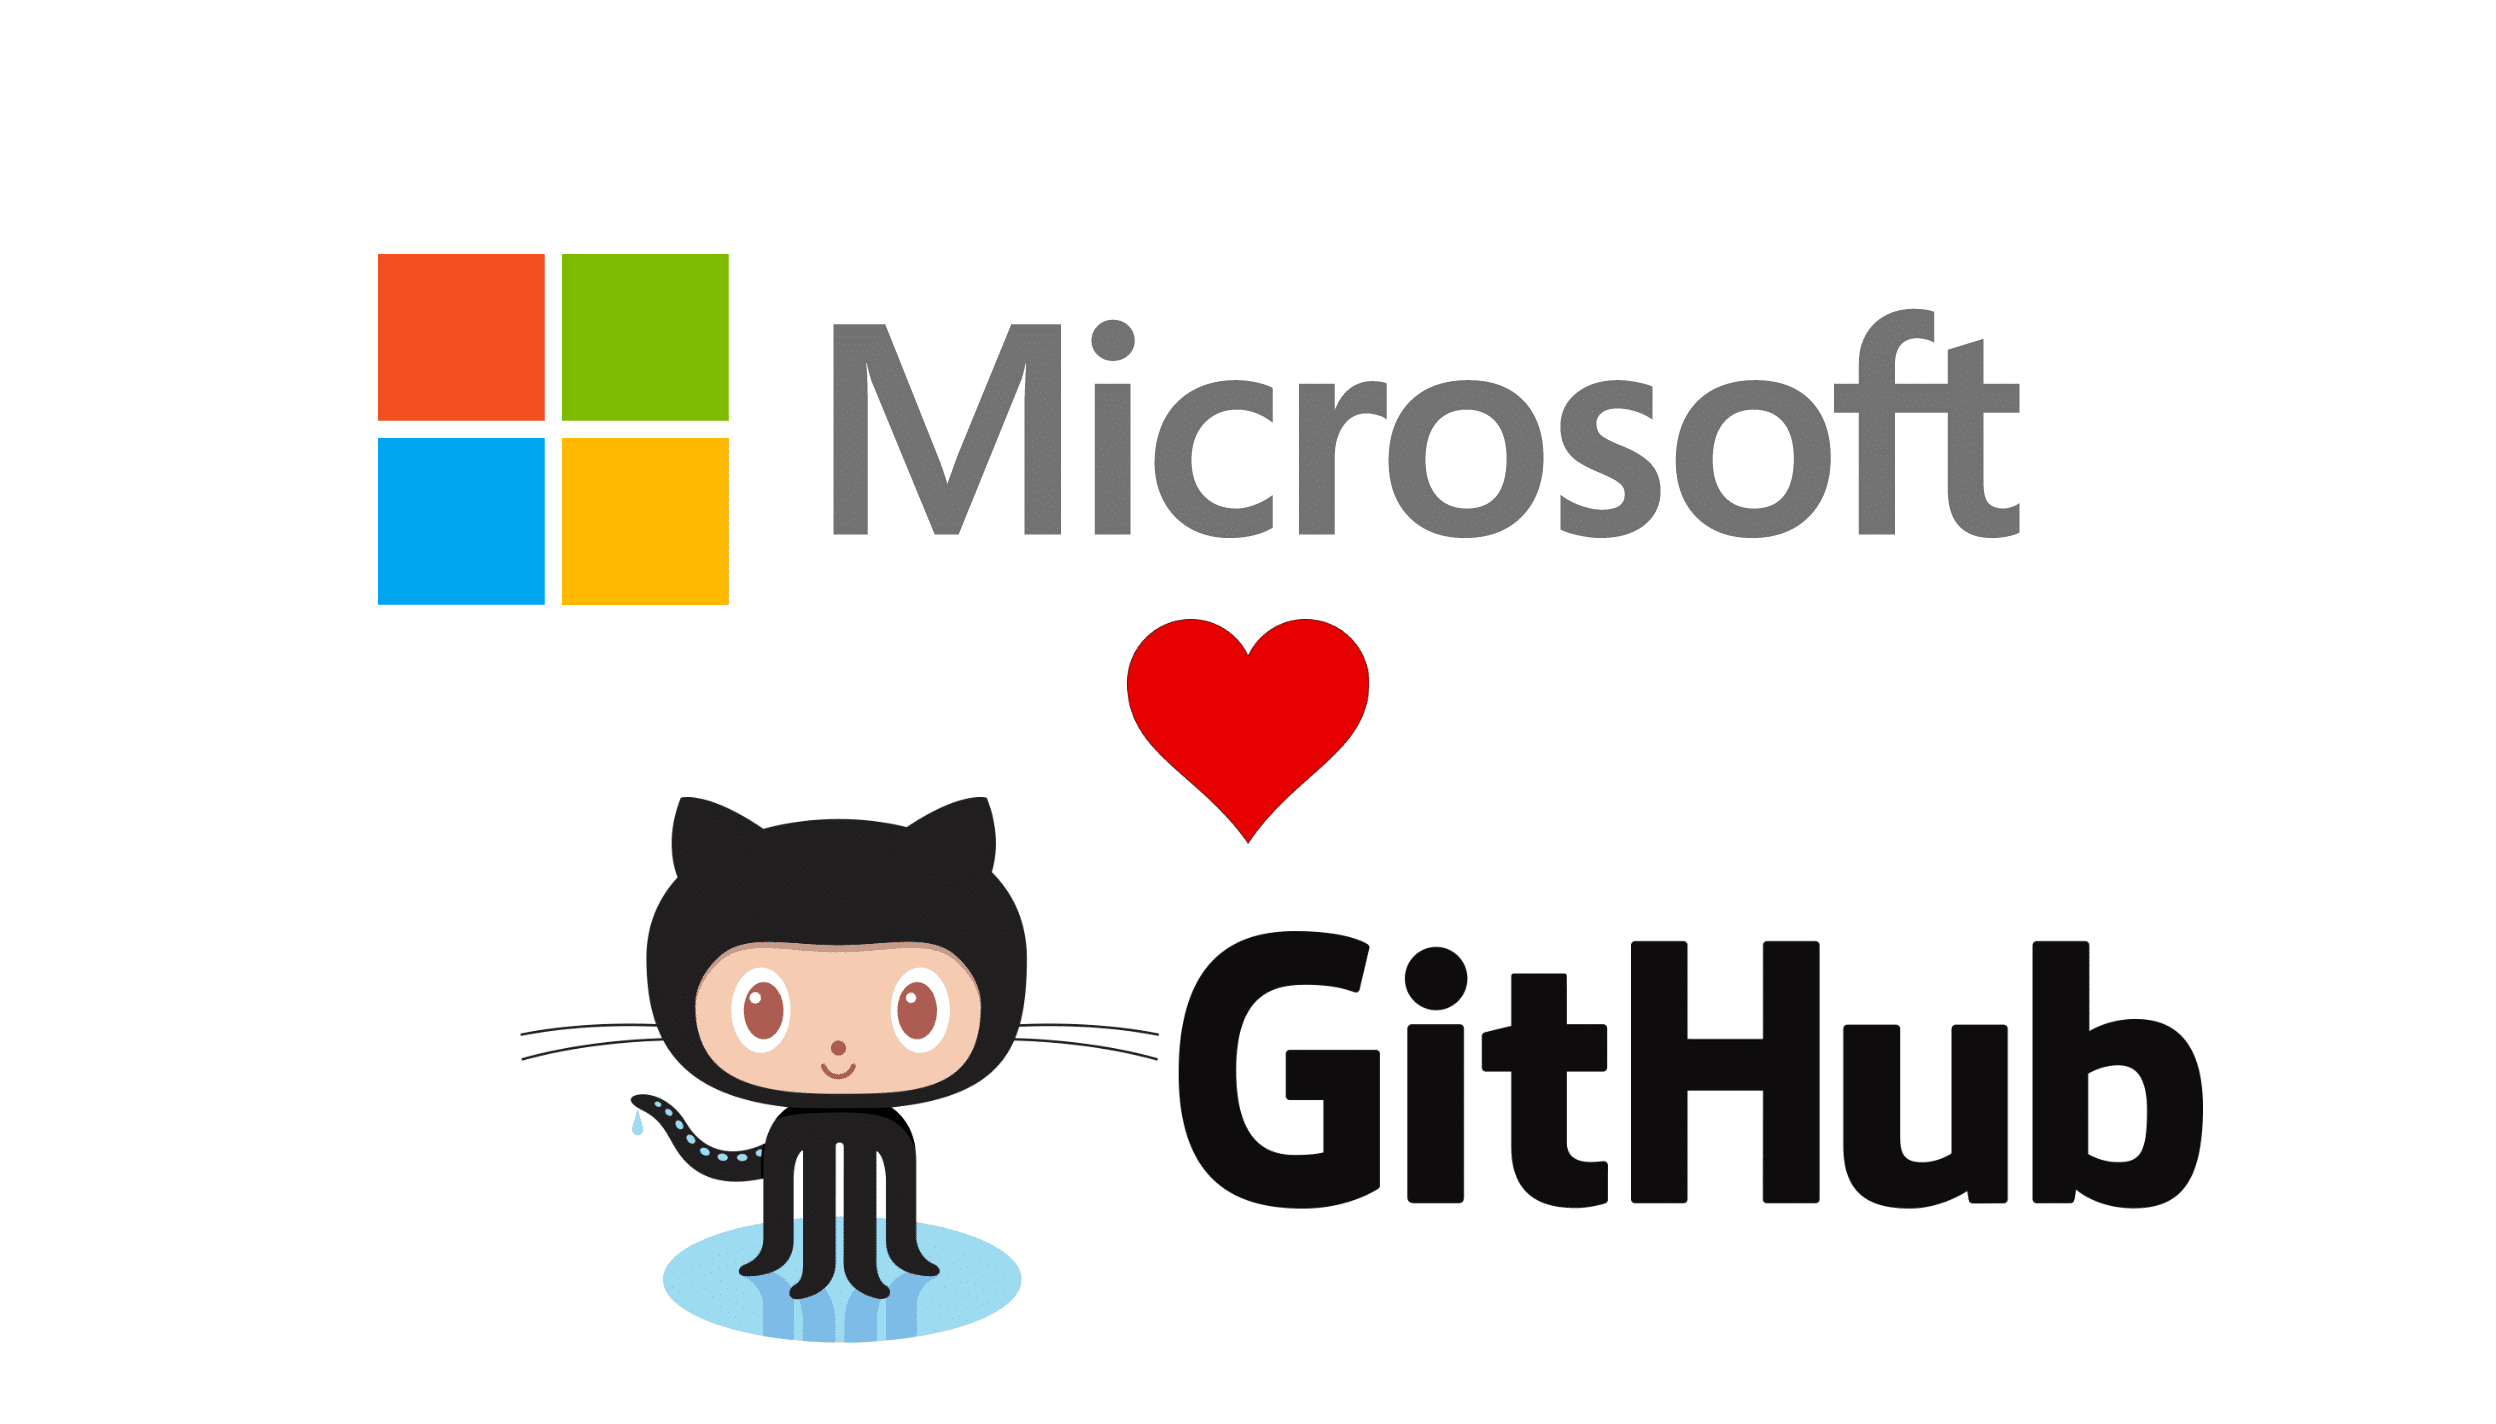 Microsoft and GitHub